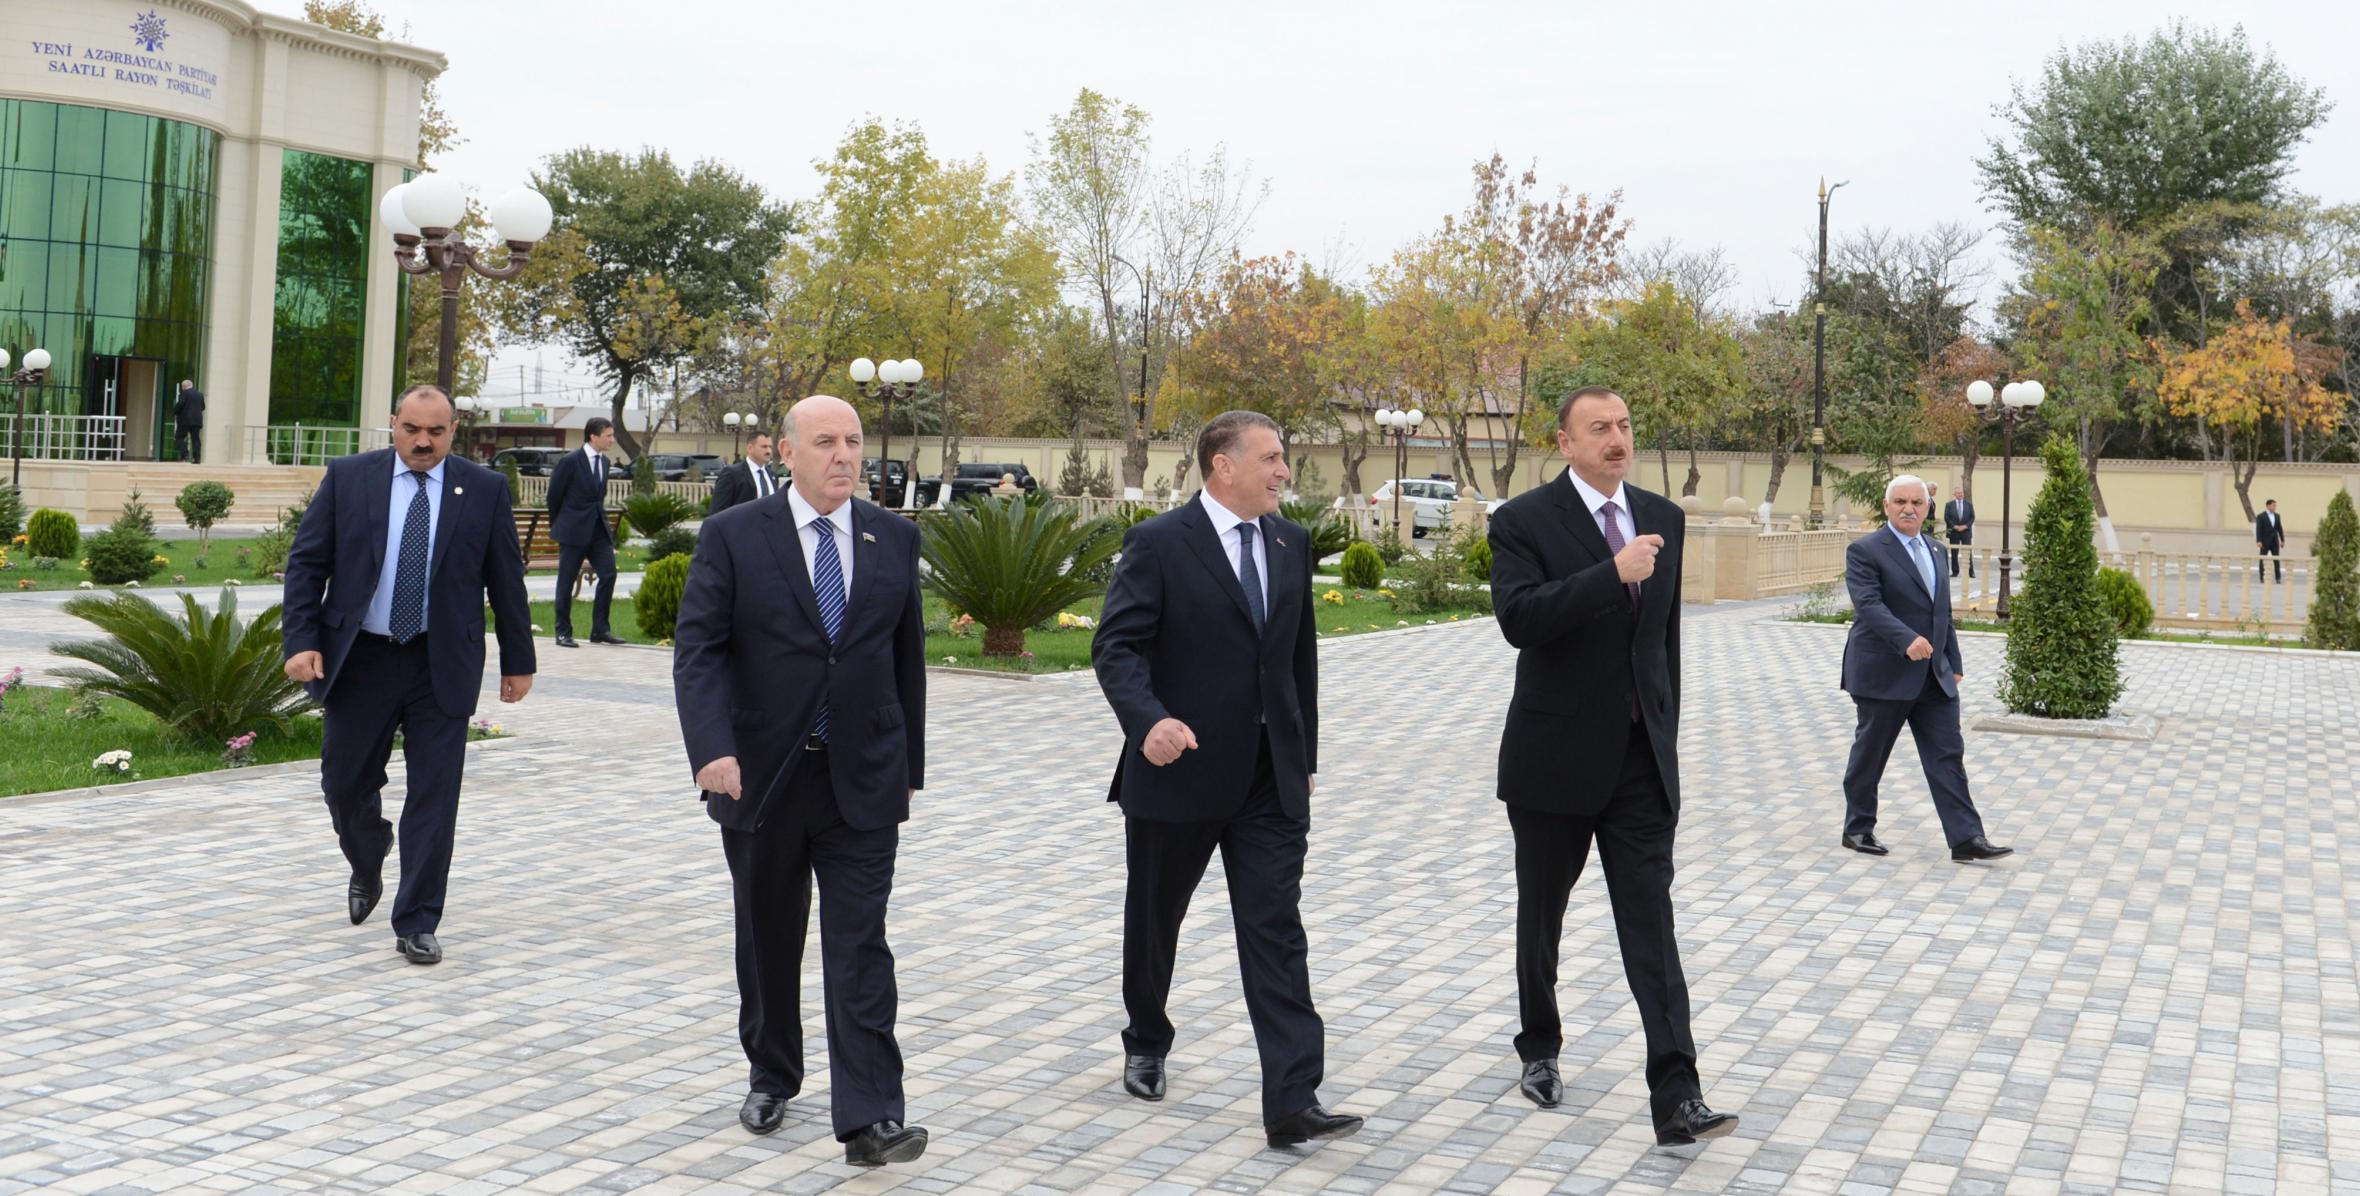 Ilham Aliyev visited the statue of nationwide leader Heydar Aliyev in Saatly